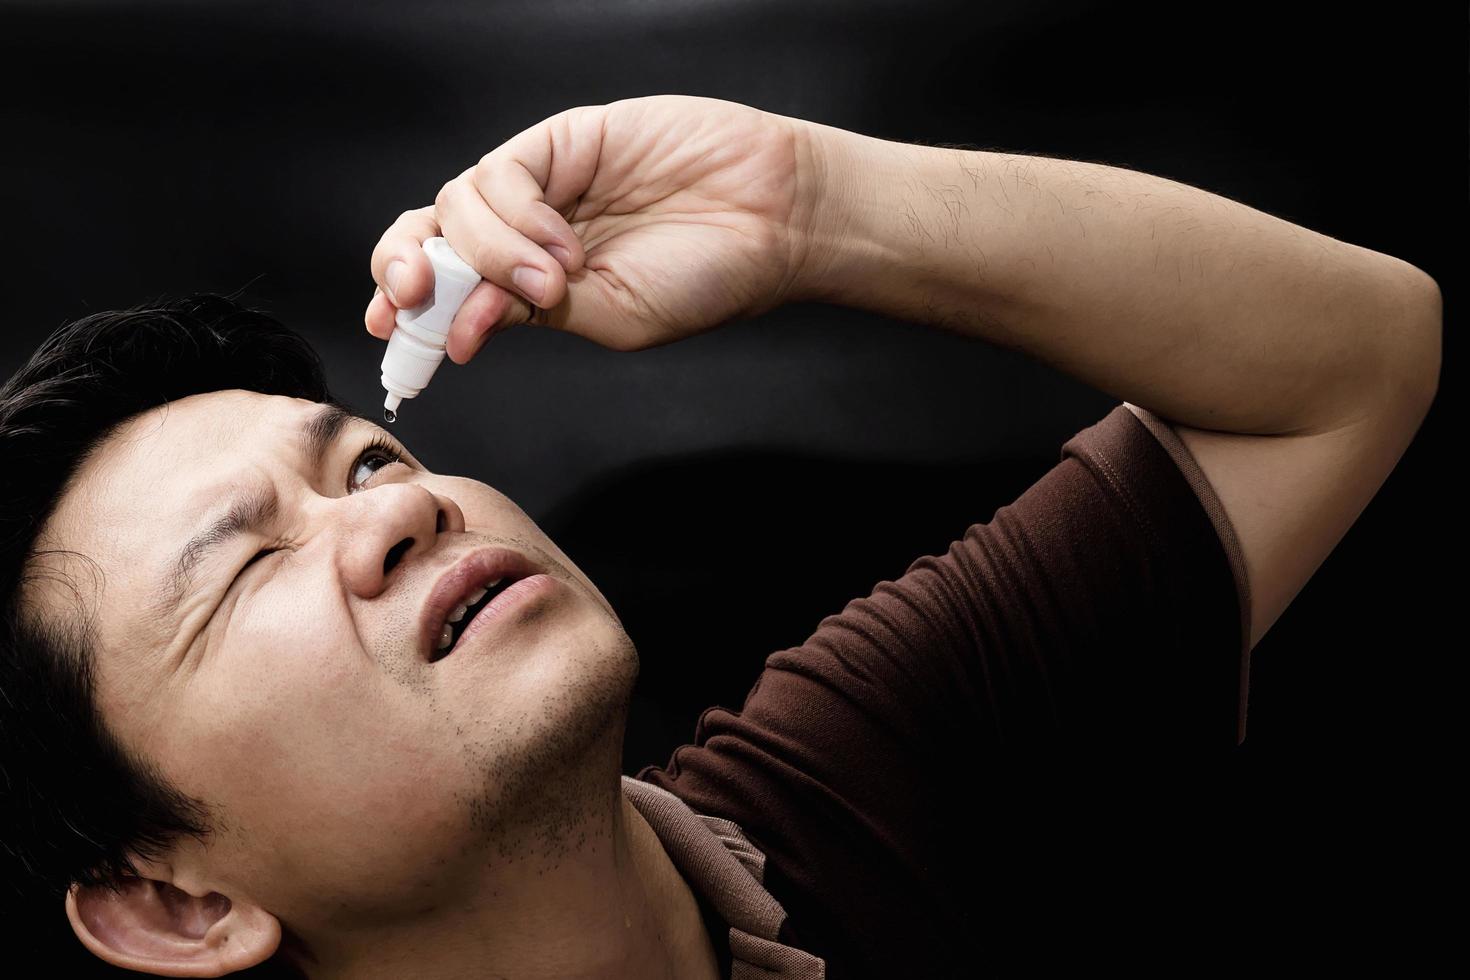 homem soltando remédio de colírio curando sua dor nos olhos com fundo preto - remédio oftalmológico de cuidados de saúde com conceito de pessoas foto